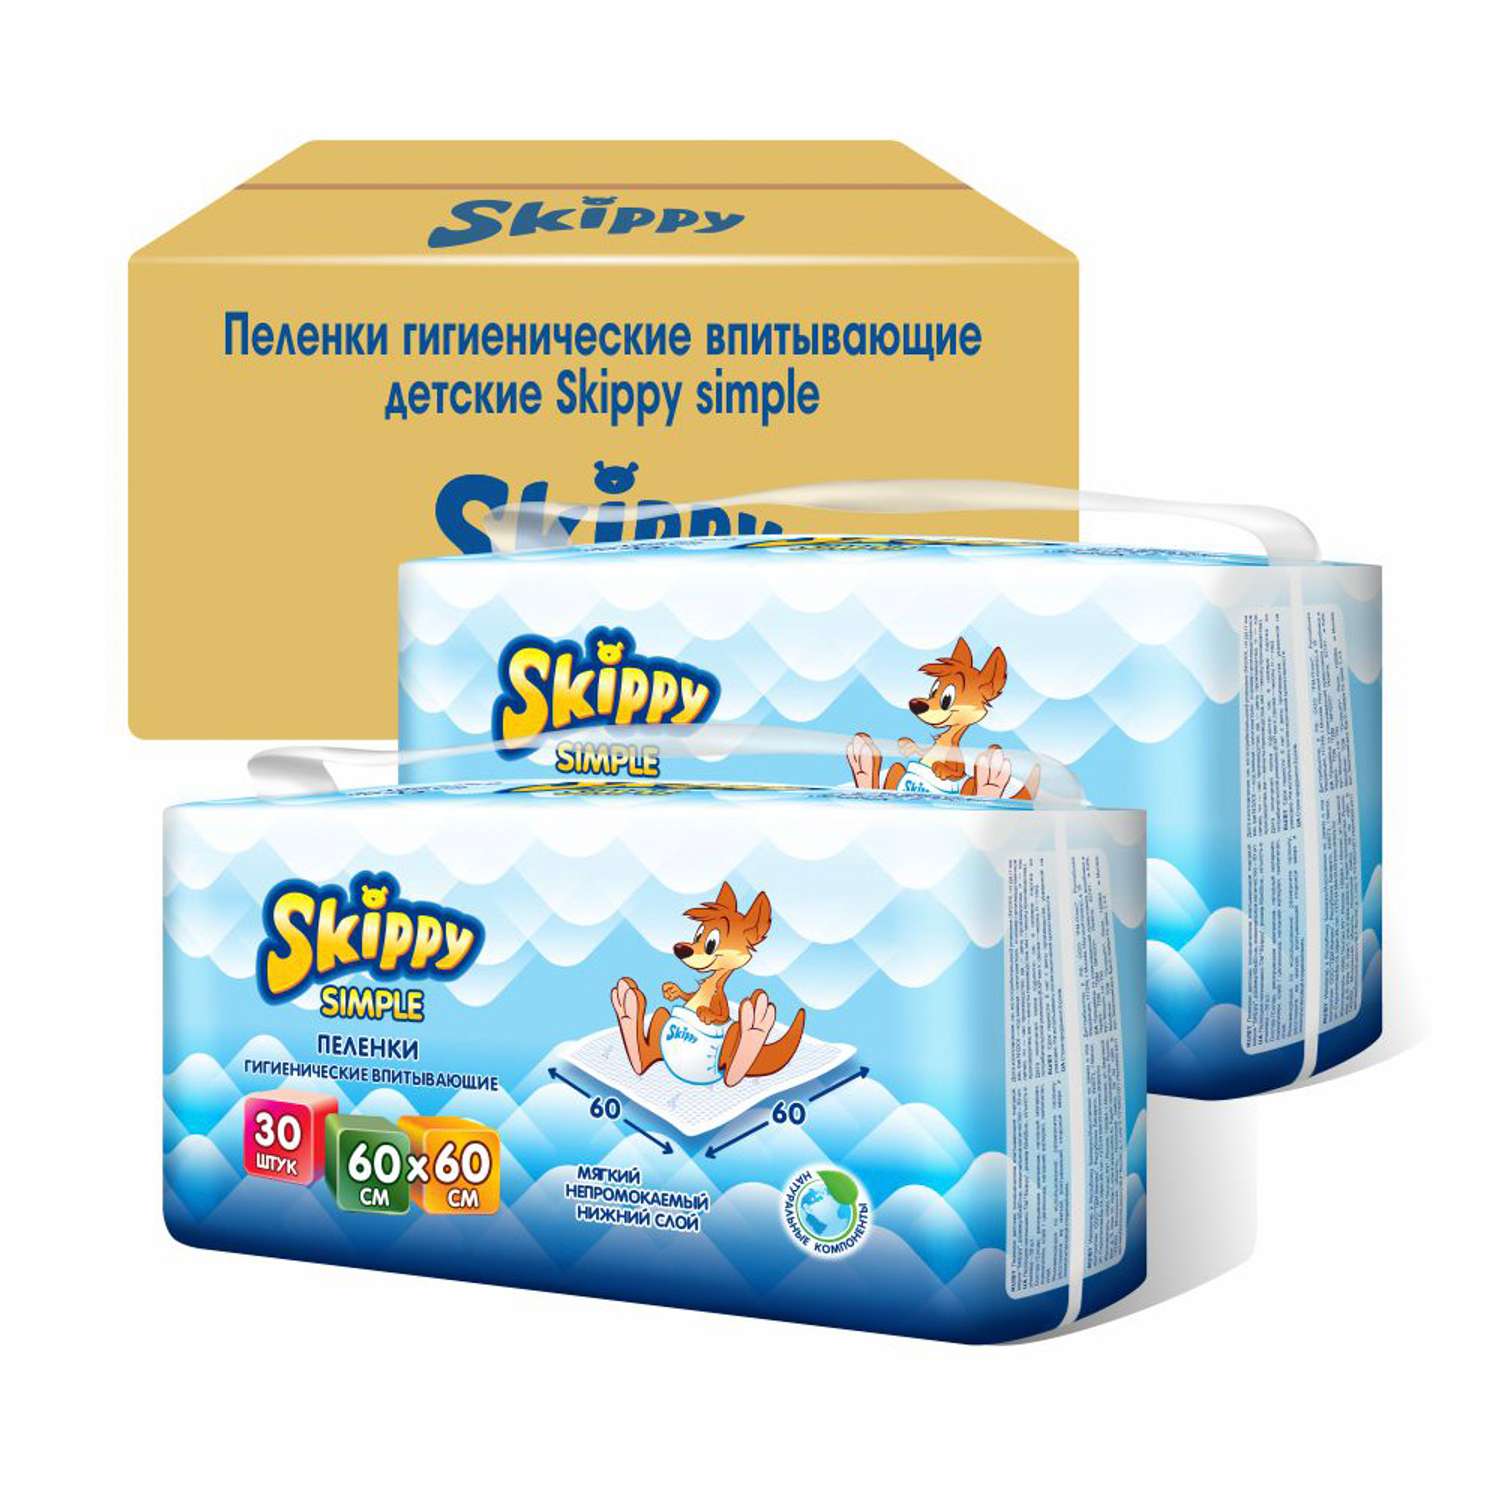 Пеленки детские гигиенические Skippy впитывающие Simple 60x60 см 2 упаковки по 30 шт 8038 - фото 2